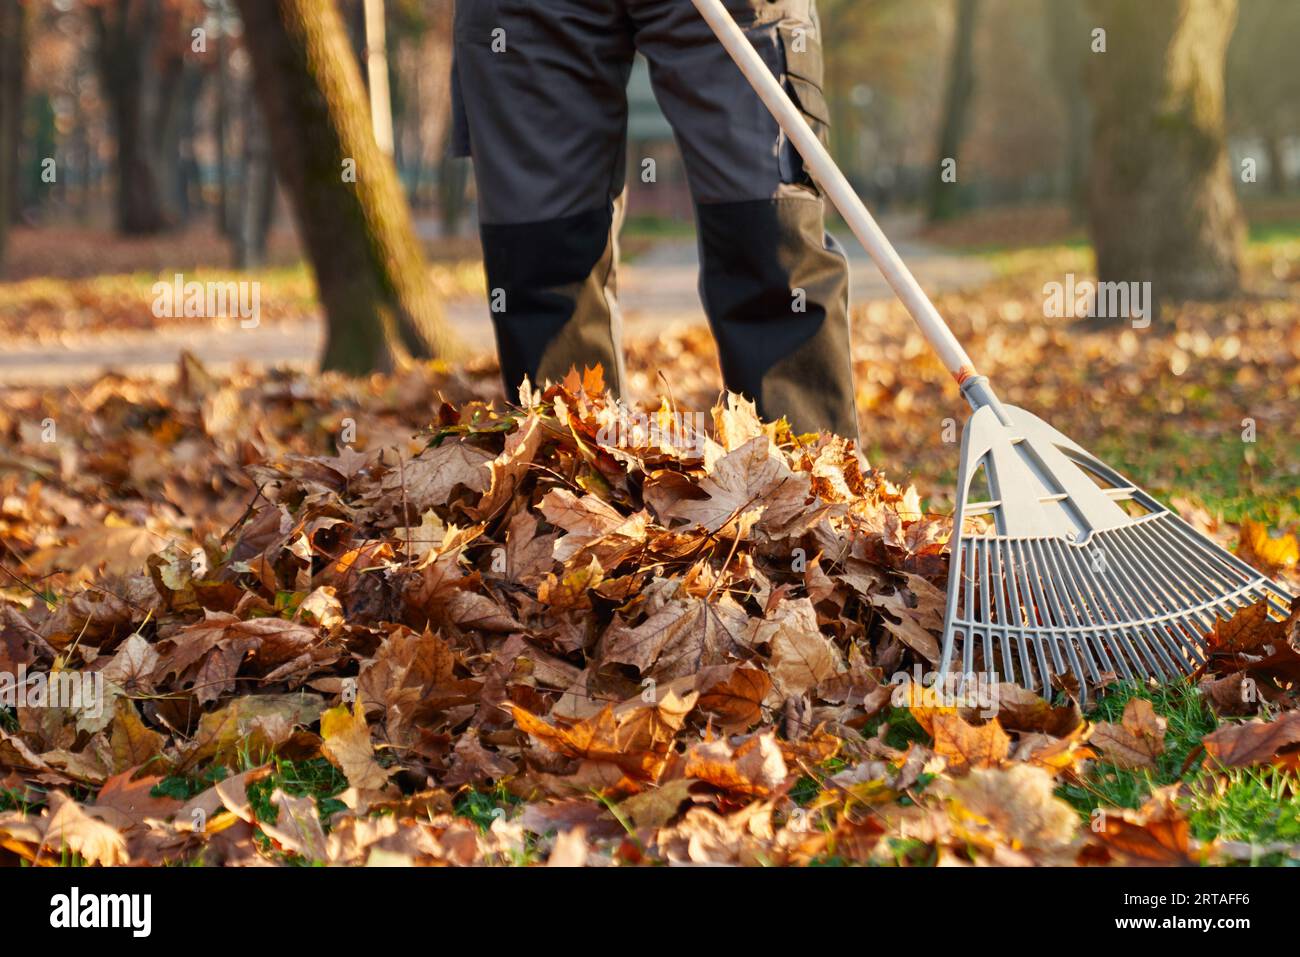 Lavoratore maschile anonimo che indossa un'uniforme scura usando il rastrello per raccogliere le foglie cadute in pila sul cortile. Vista del prodotto dell'uomo che rastrella foglie asciutte, pulizia gr Foto Stock